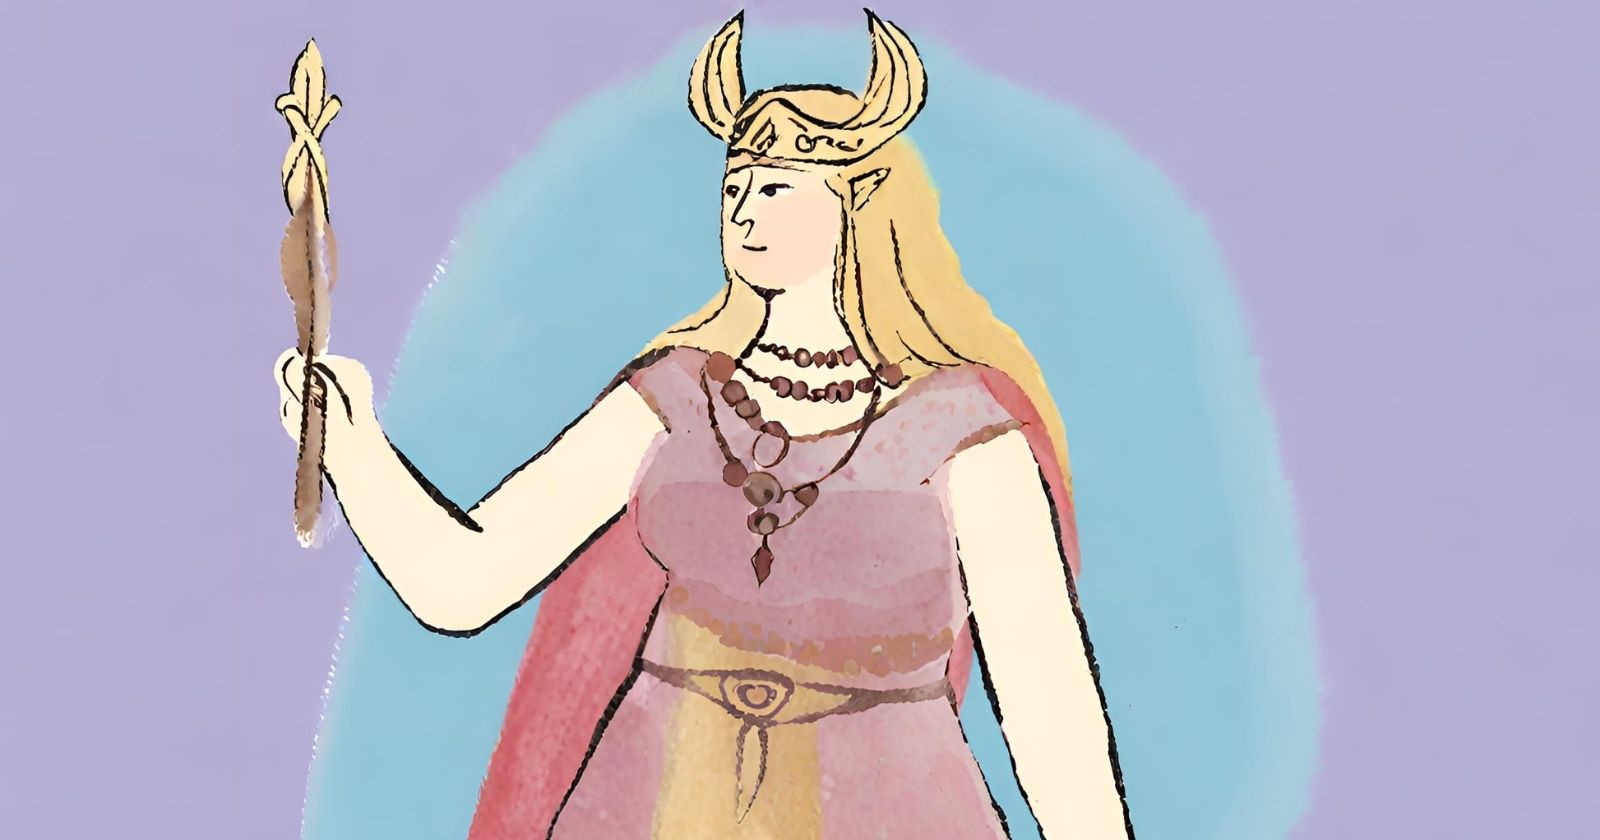 Freyja a Deusa Nórdica da Beleza e da guerra